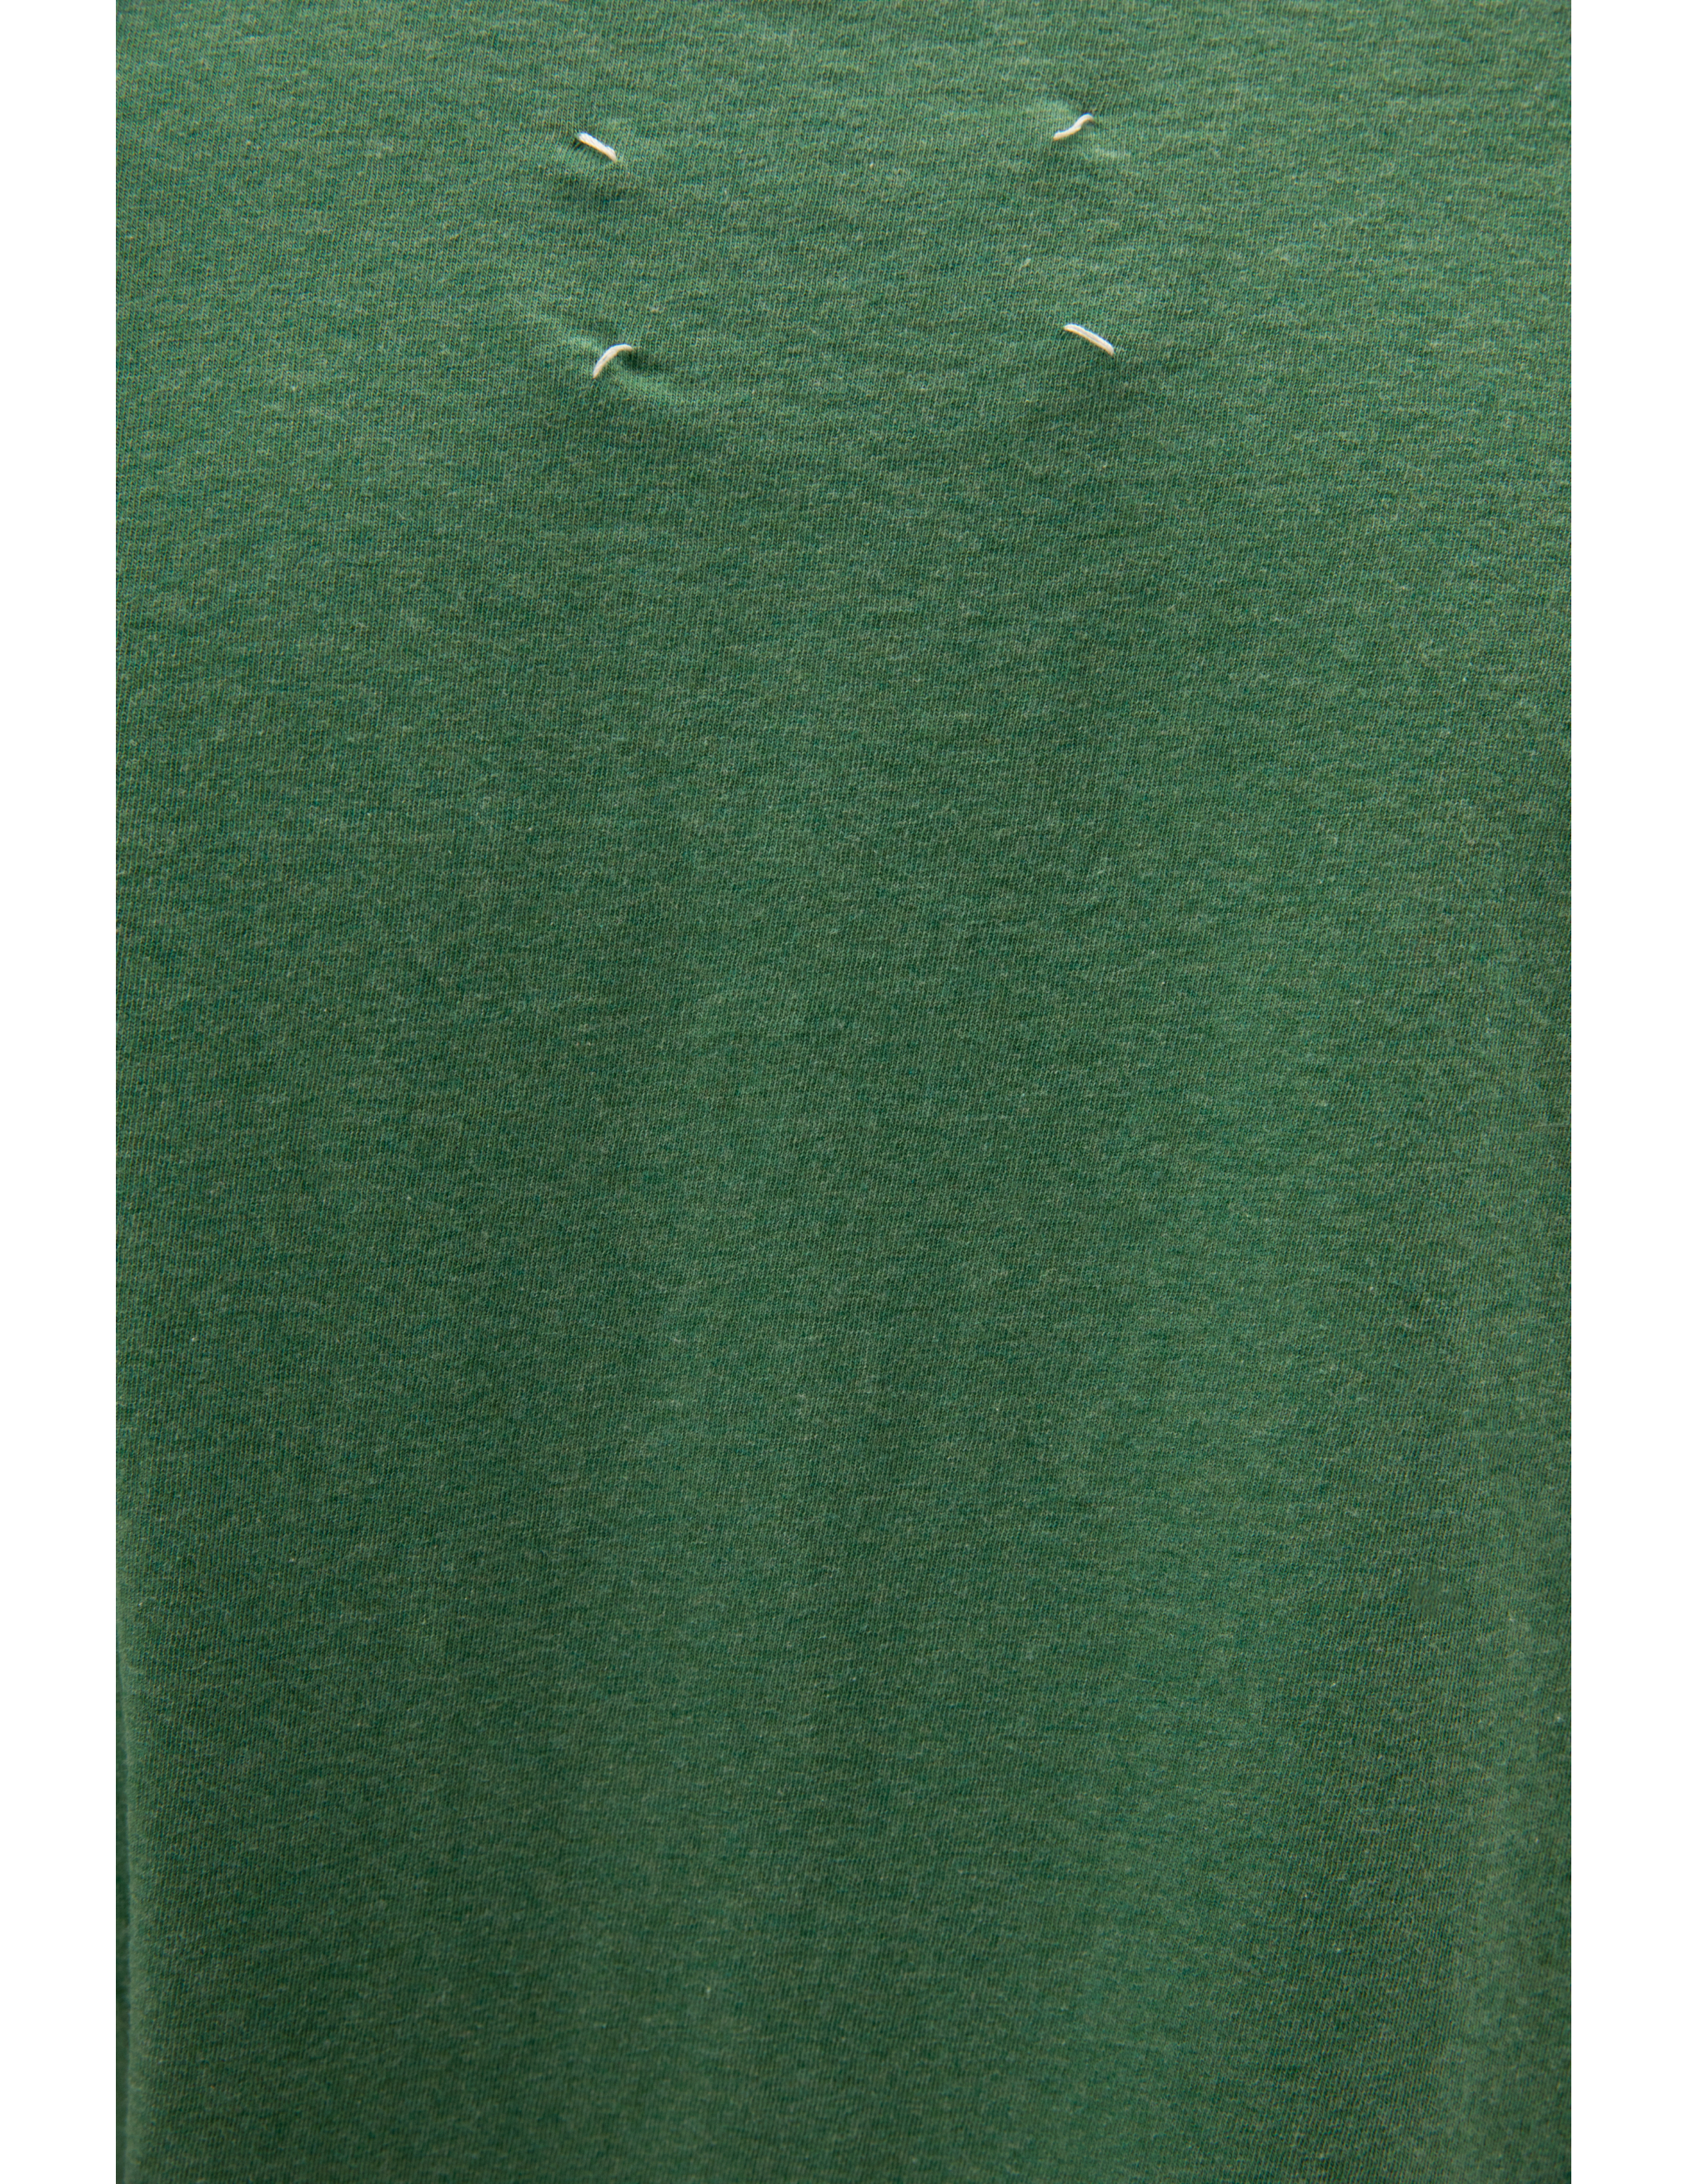 Зеленая футболка c вышивкой логотипа Maison Margiela S50GC0660/S23984/626M, размер 52;50 S50GC0660/S23984/626M - фото 5